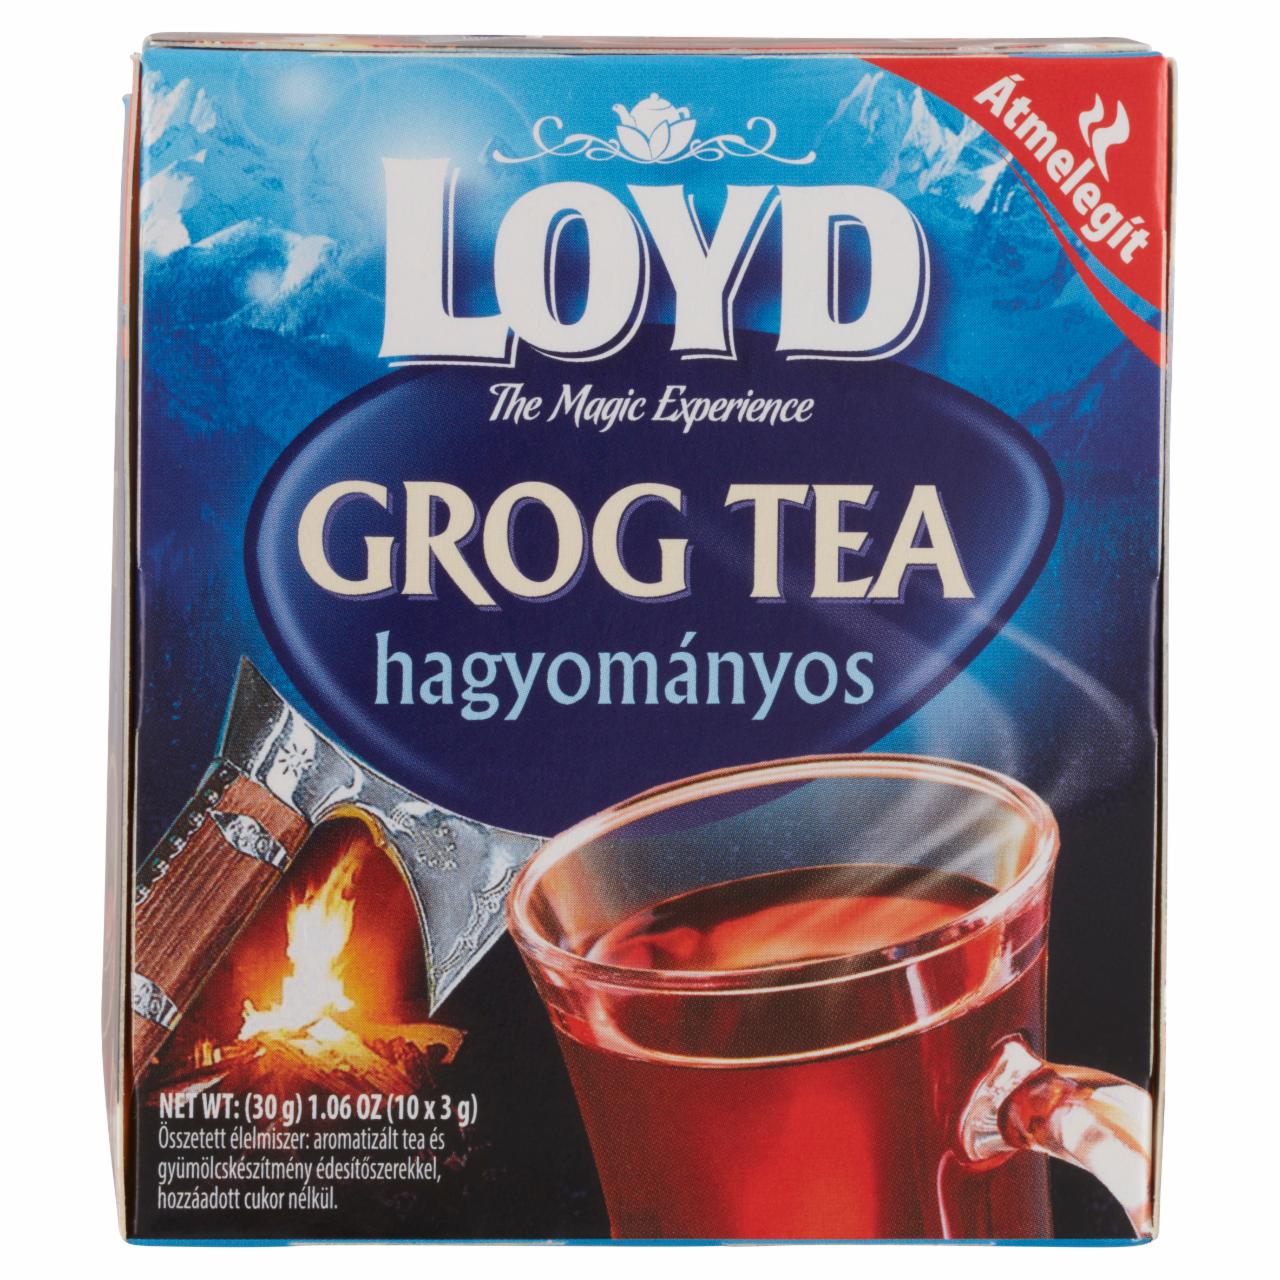 Képek - Loyd hagyományos grog tea édesítőszerekkel, hozzáadott cukor nélkül 10 filter 30 g